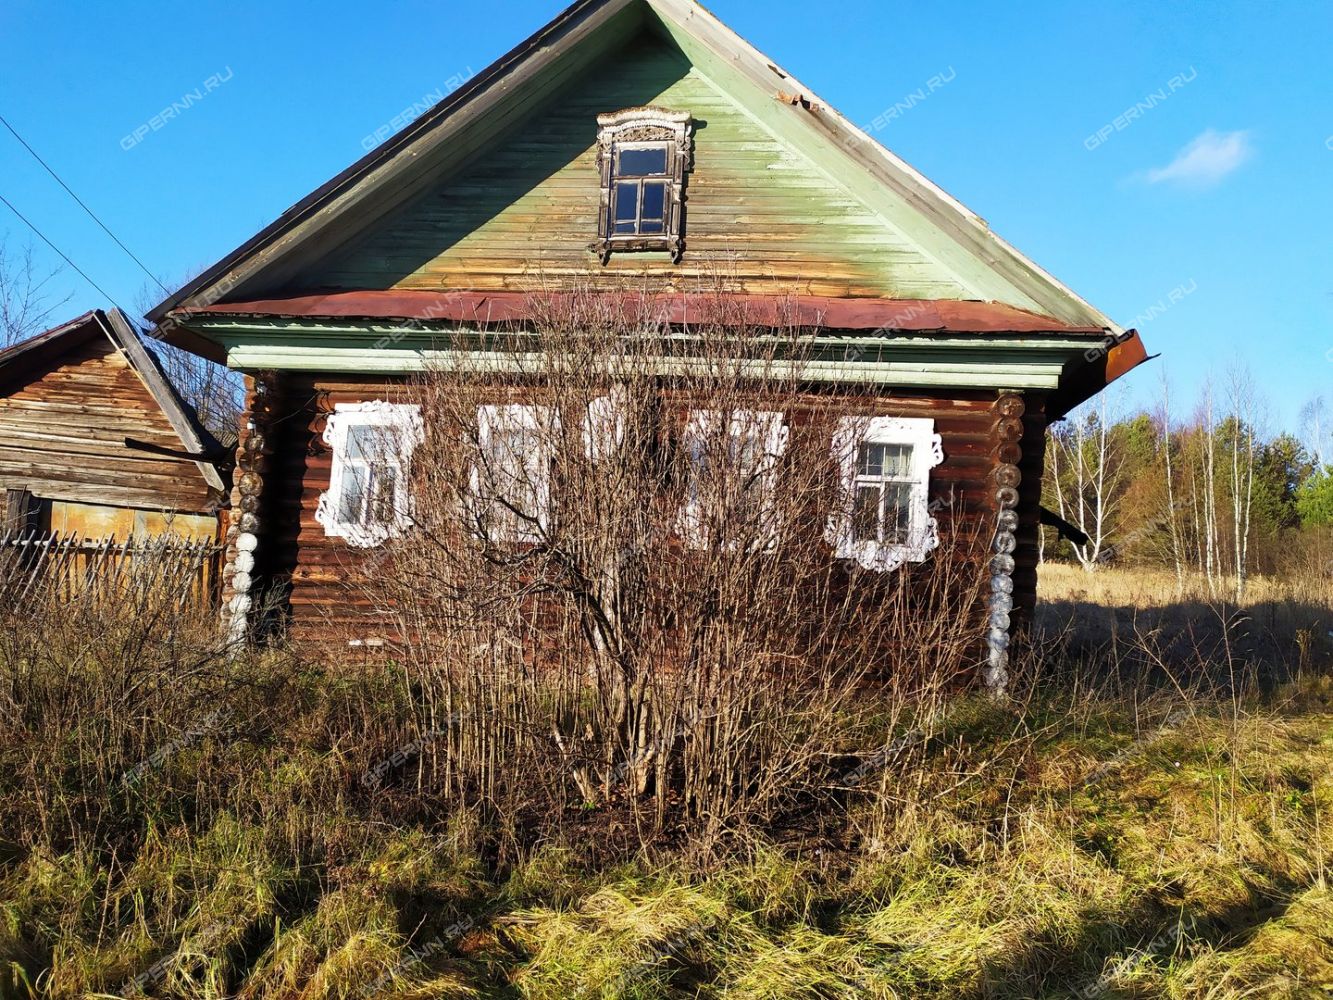 Продажа домов в красноуфимске свердловской области на авито с фото